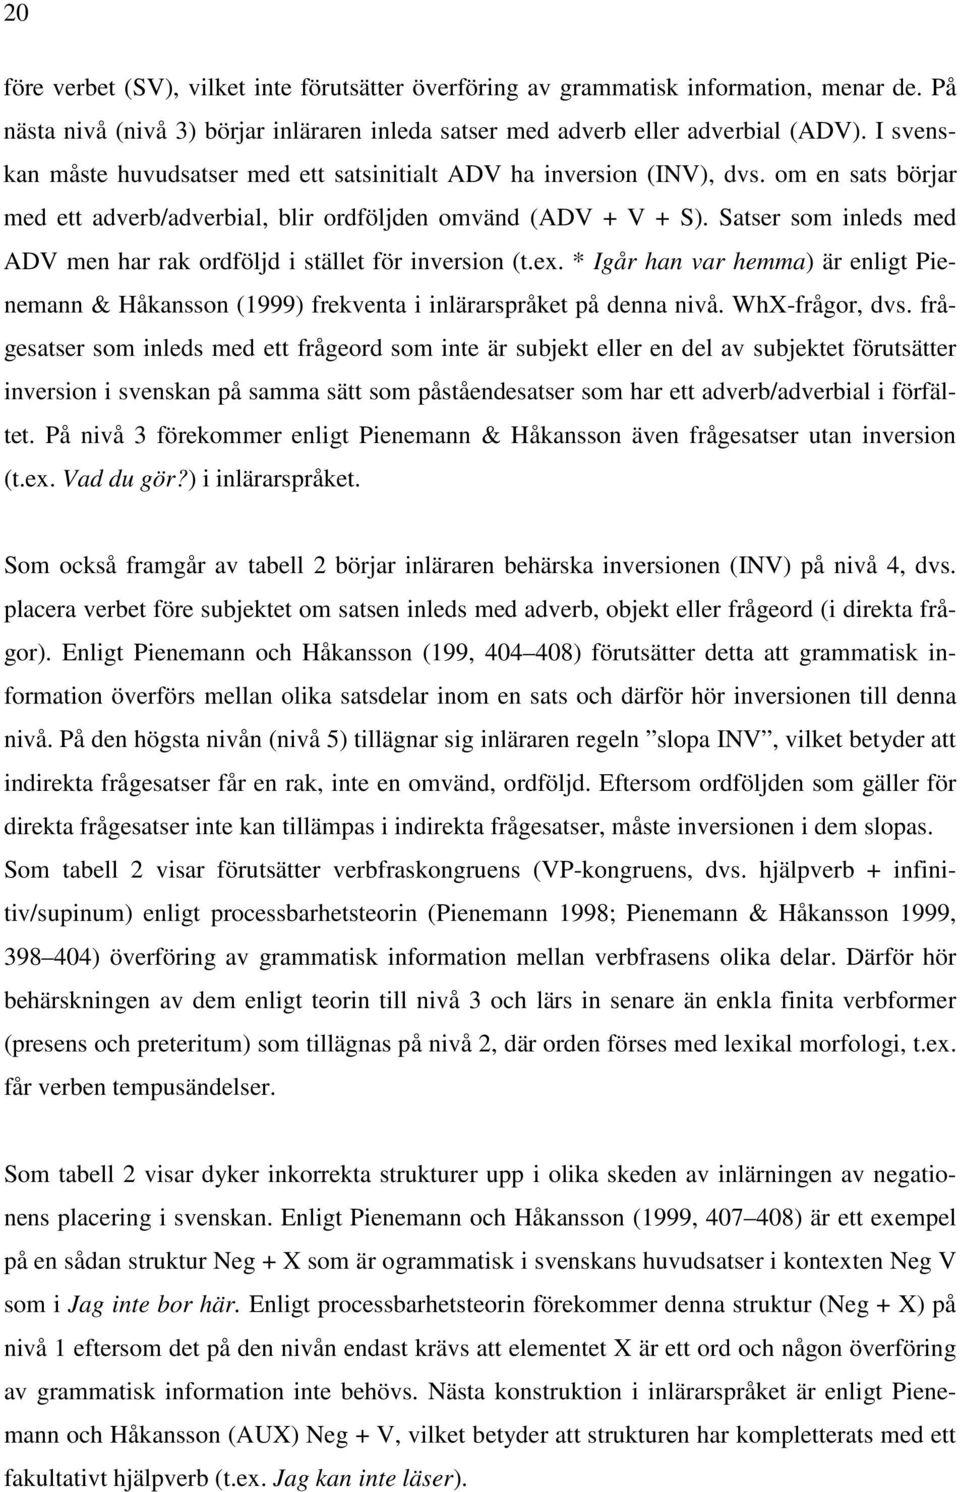 Satser som inleds med ADV men har rak ordföljd i stället för inversion (t.ex. * Igår han var hemma) är enligt Pienemann & Håkansson (1999) frekventa i inlärarspråket på denna nivå. WhX-frågor, dvs.